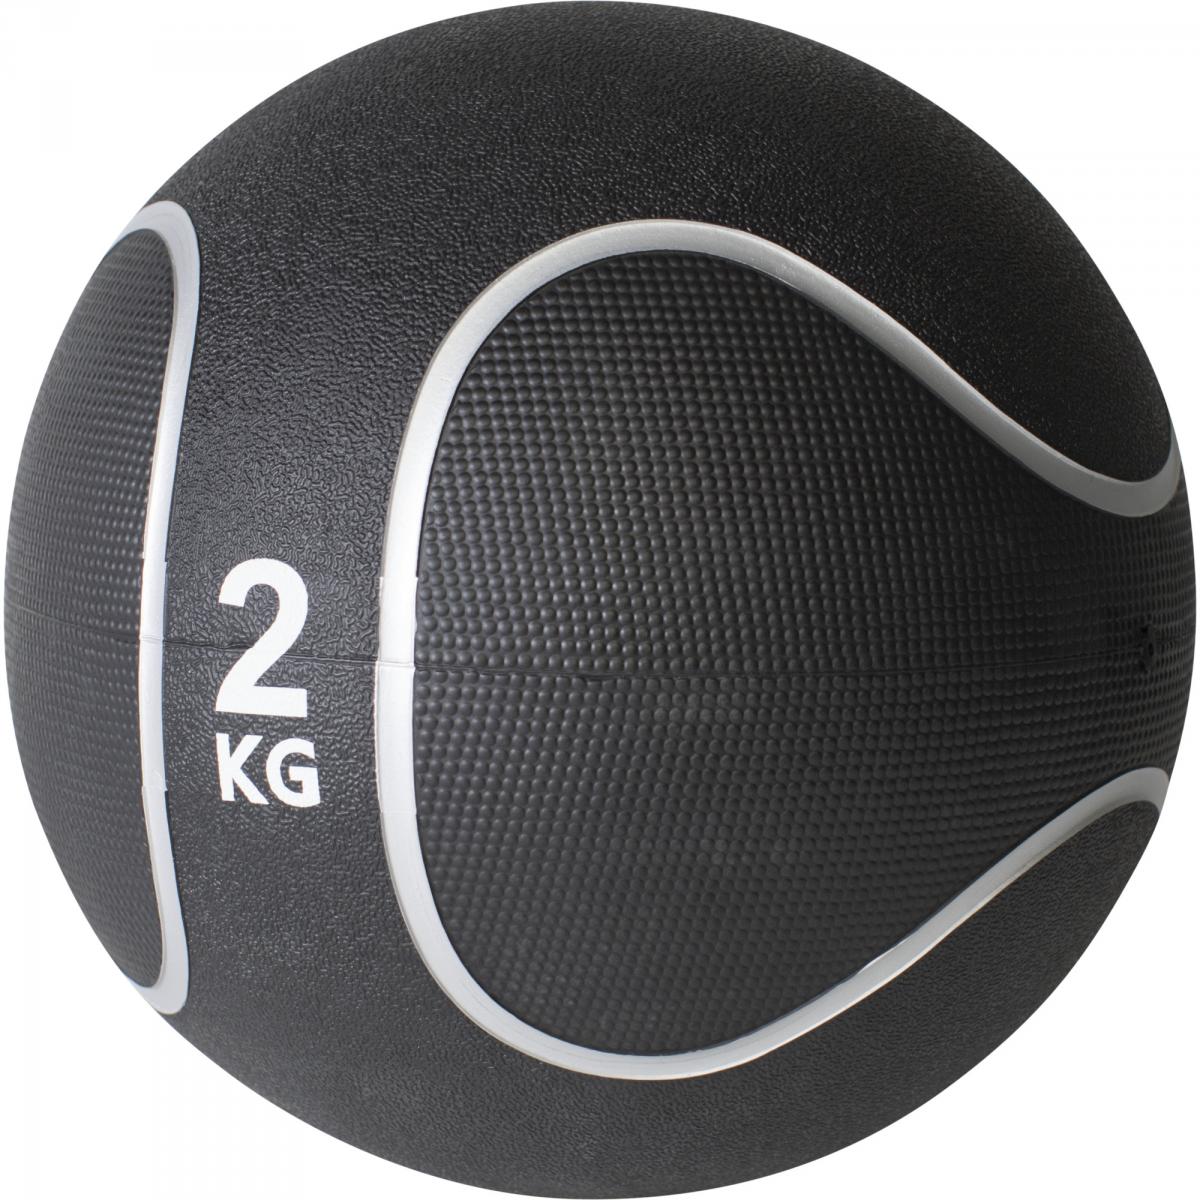 Médecine ball style noir/gris de 2 KG diamètre 23cm